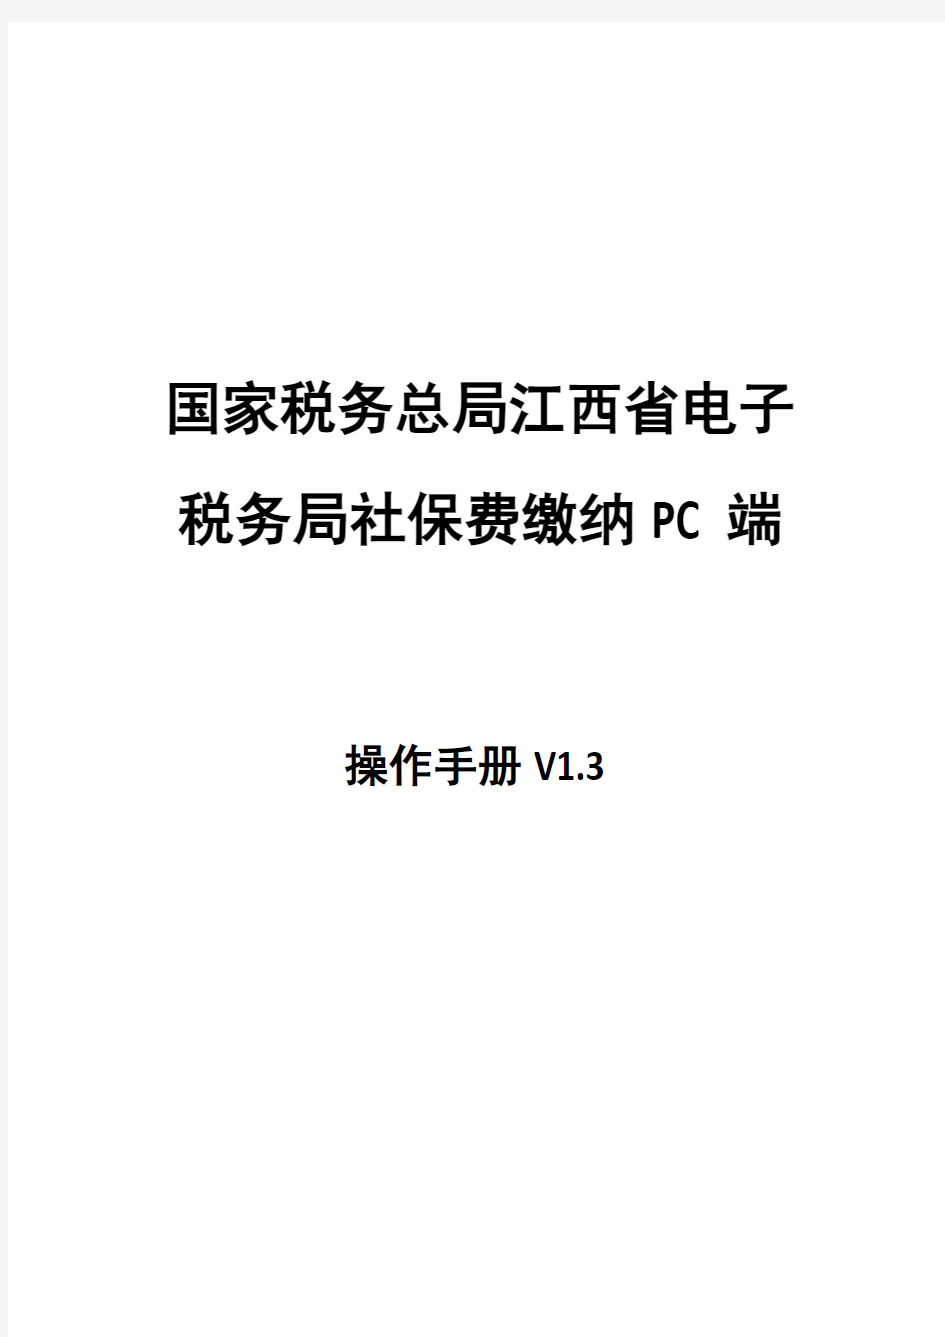 国家税务总局江西省电子税务局社保费缴纳PC端操作手册